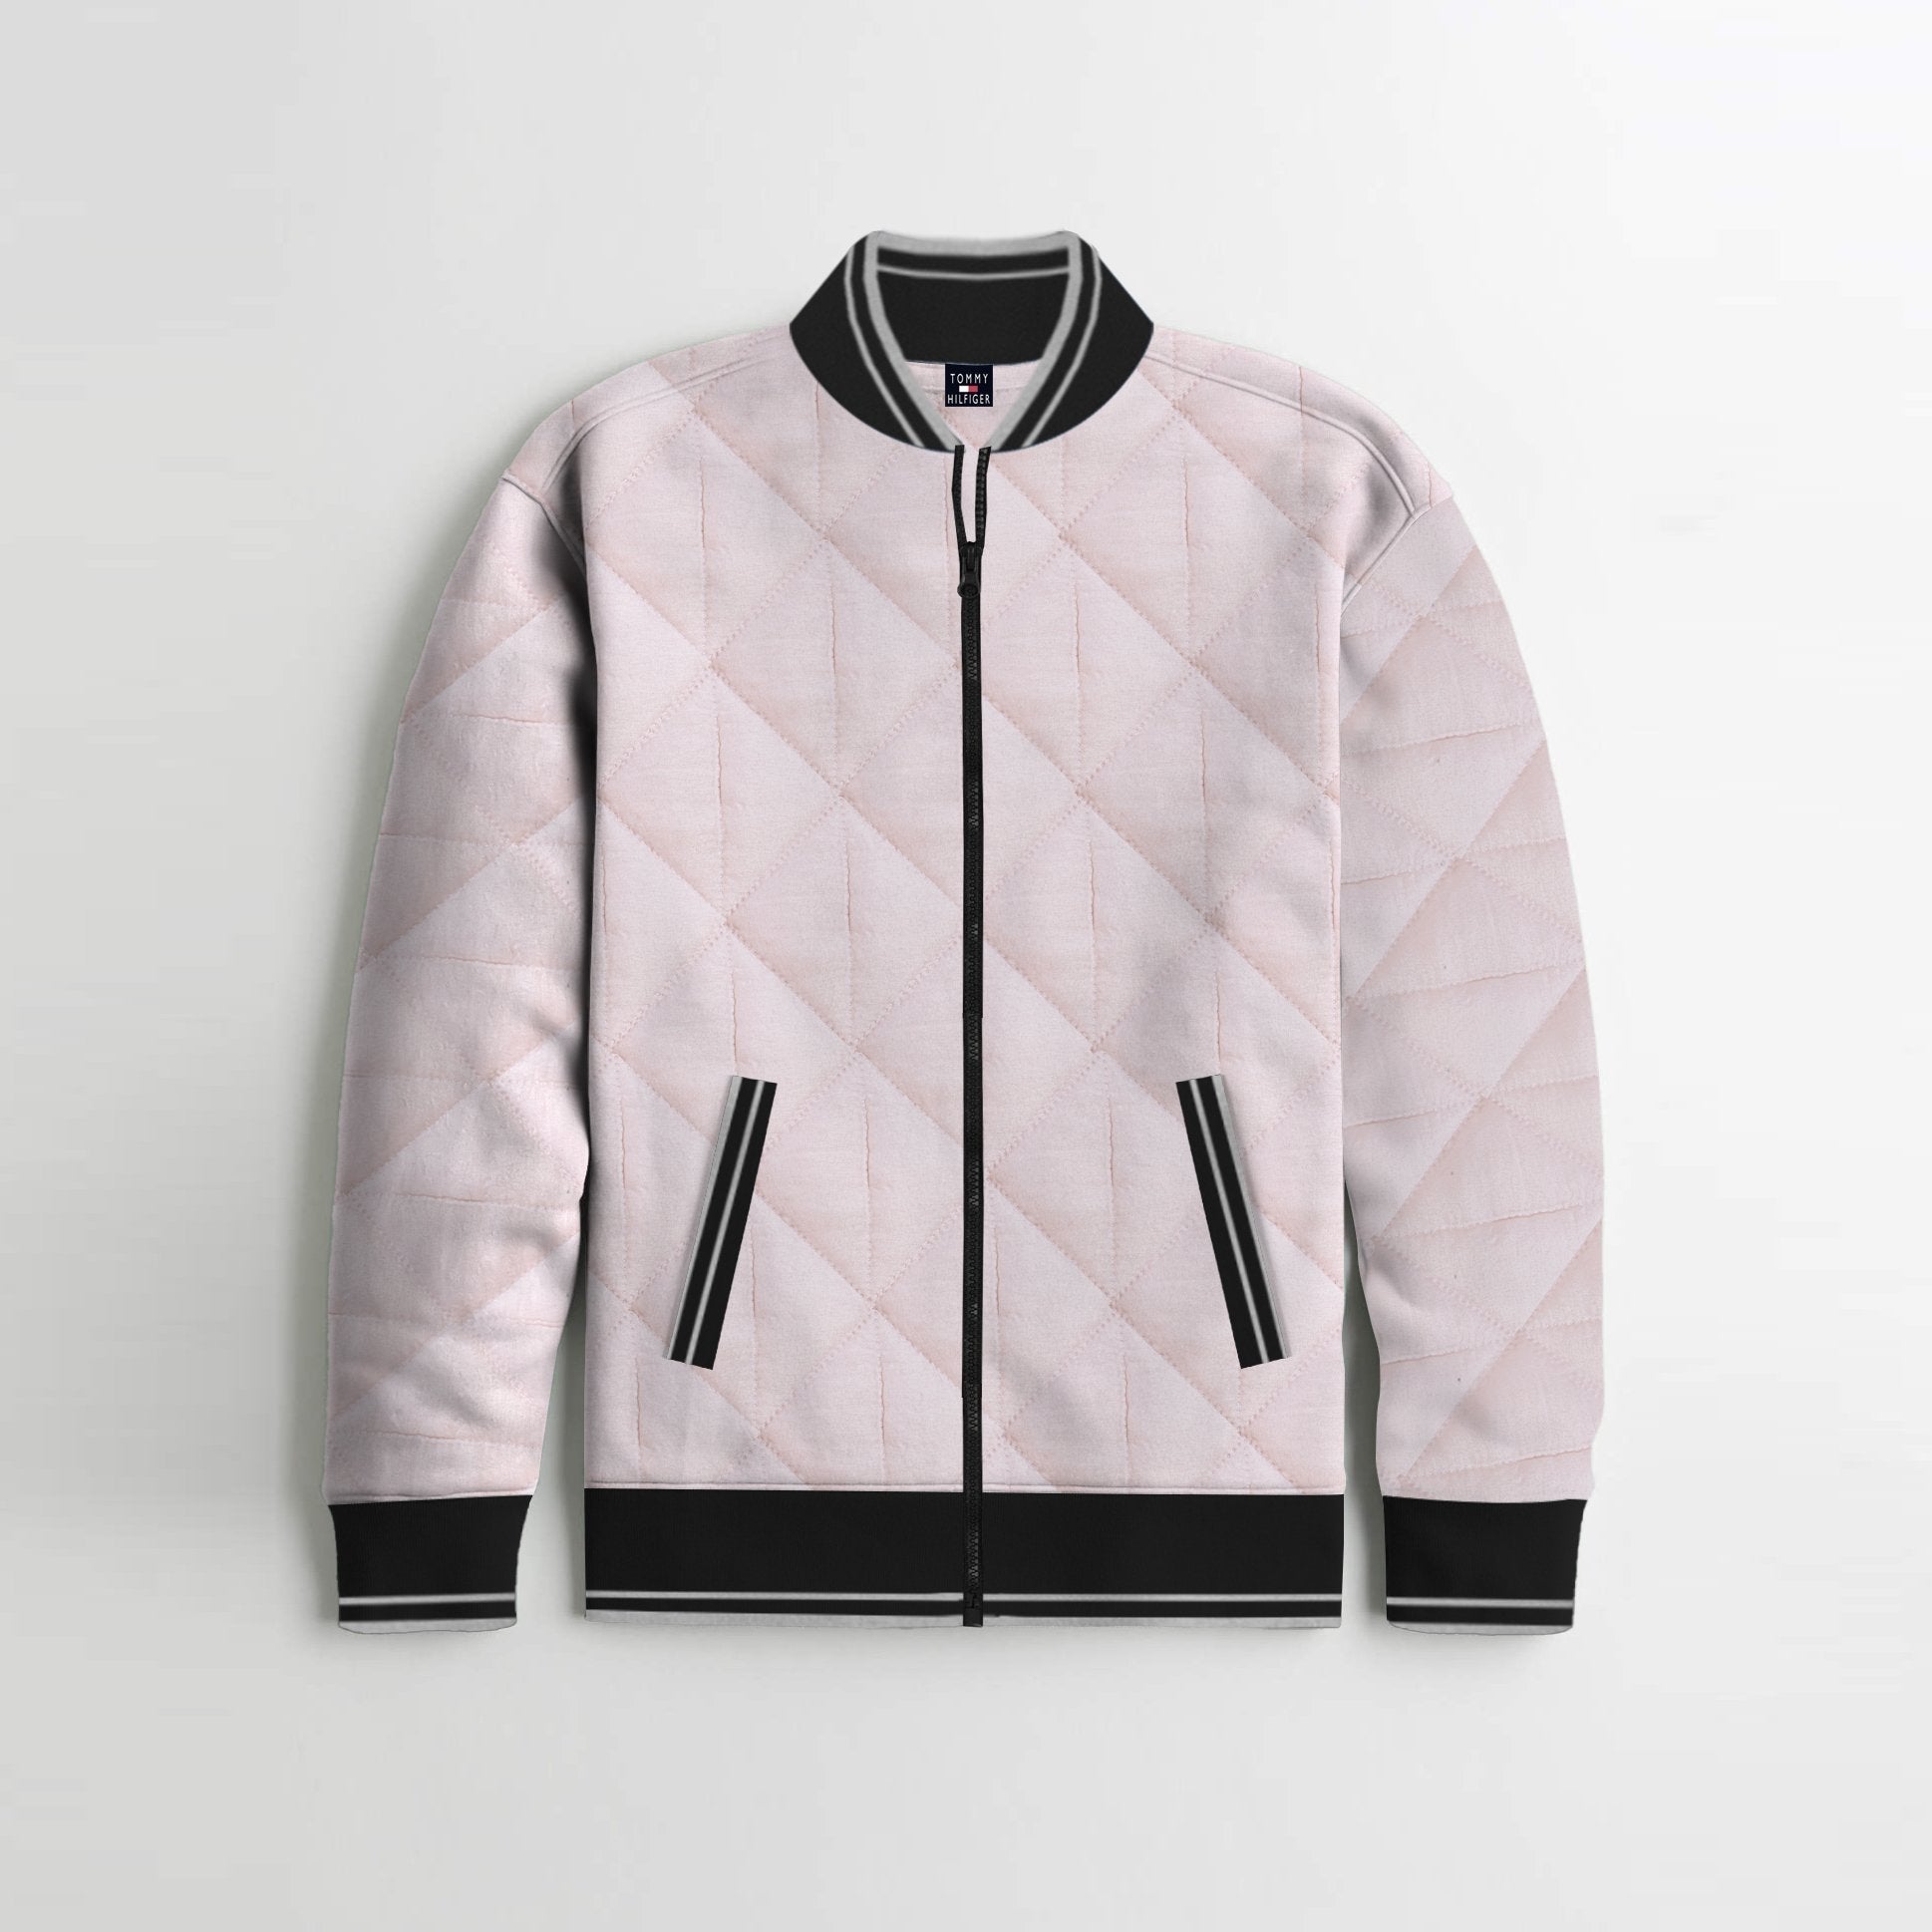 Quilted Zipper Baseball Jacket For Kids-Light Pink & Black-SP4402